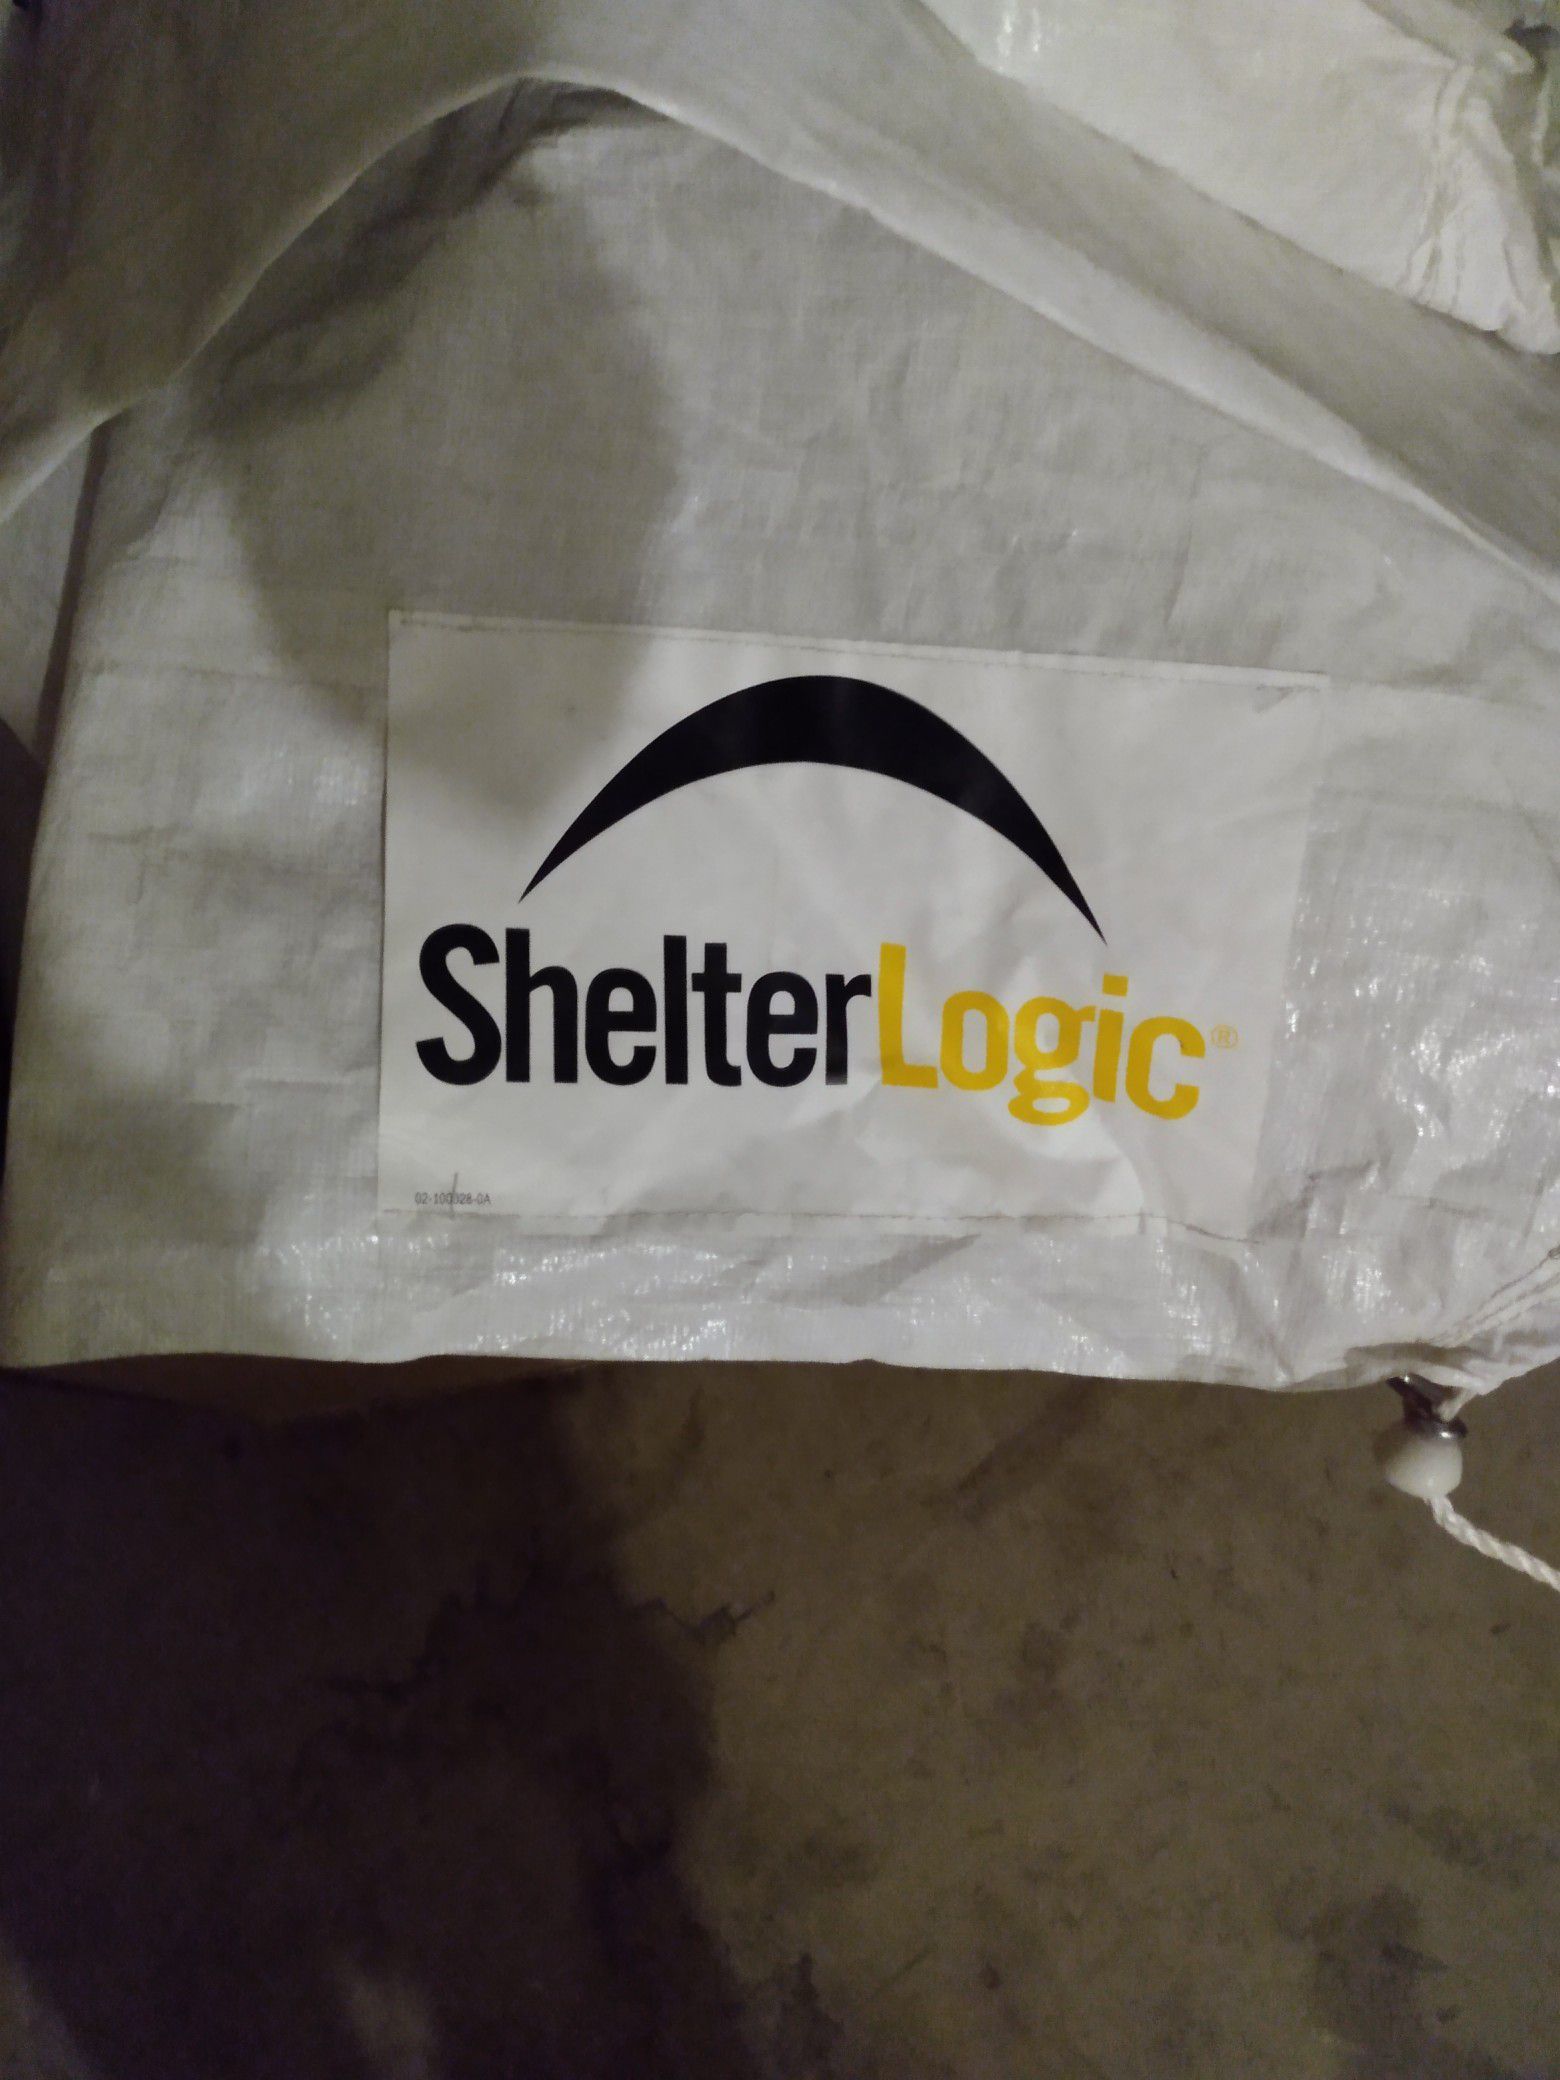 Shelter logic